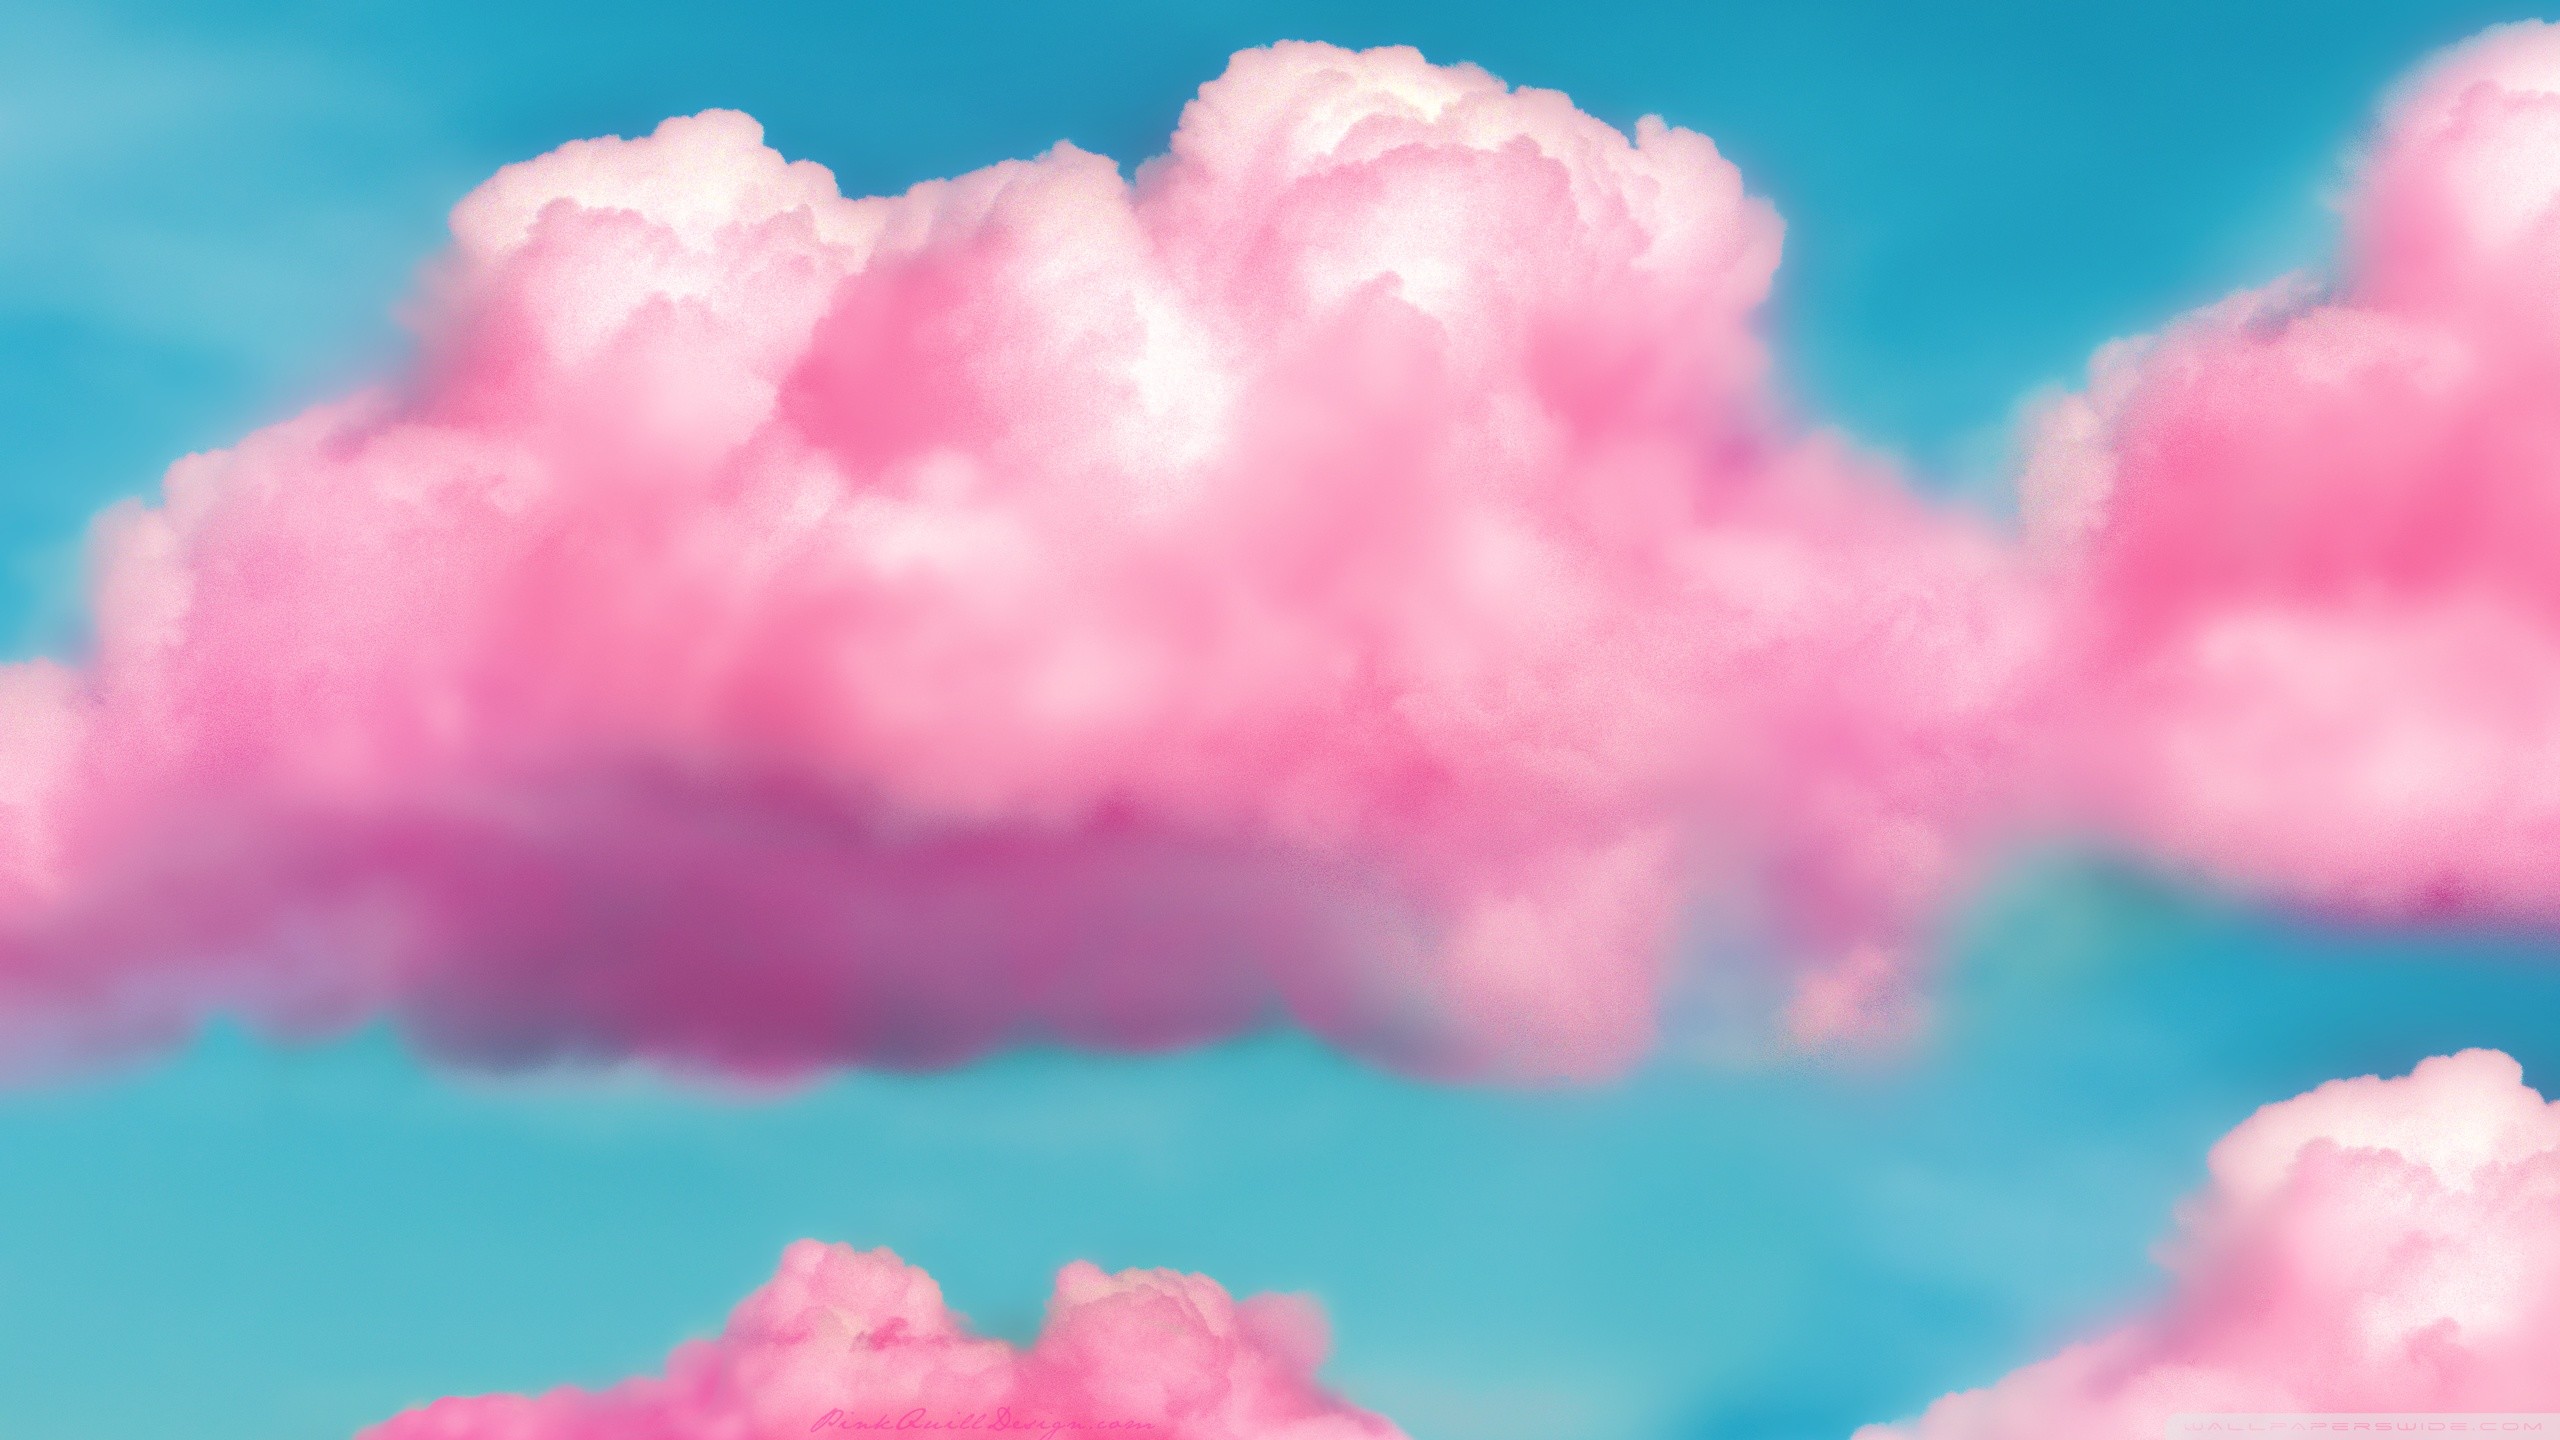 2560x1440 ... pink fluffy clouds hd desktop wallpaper widescreen high ...